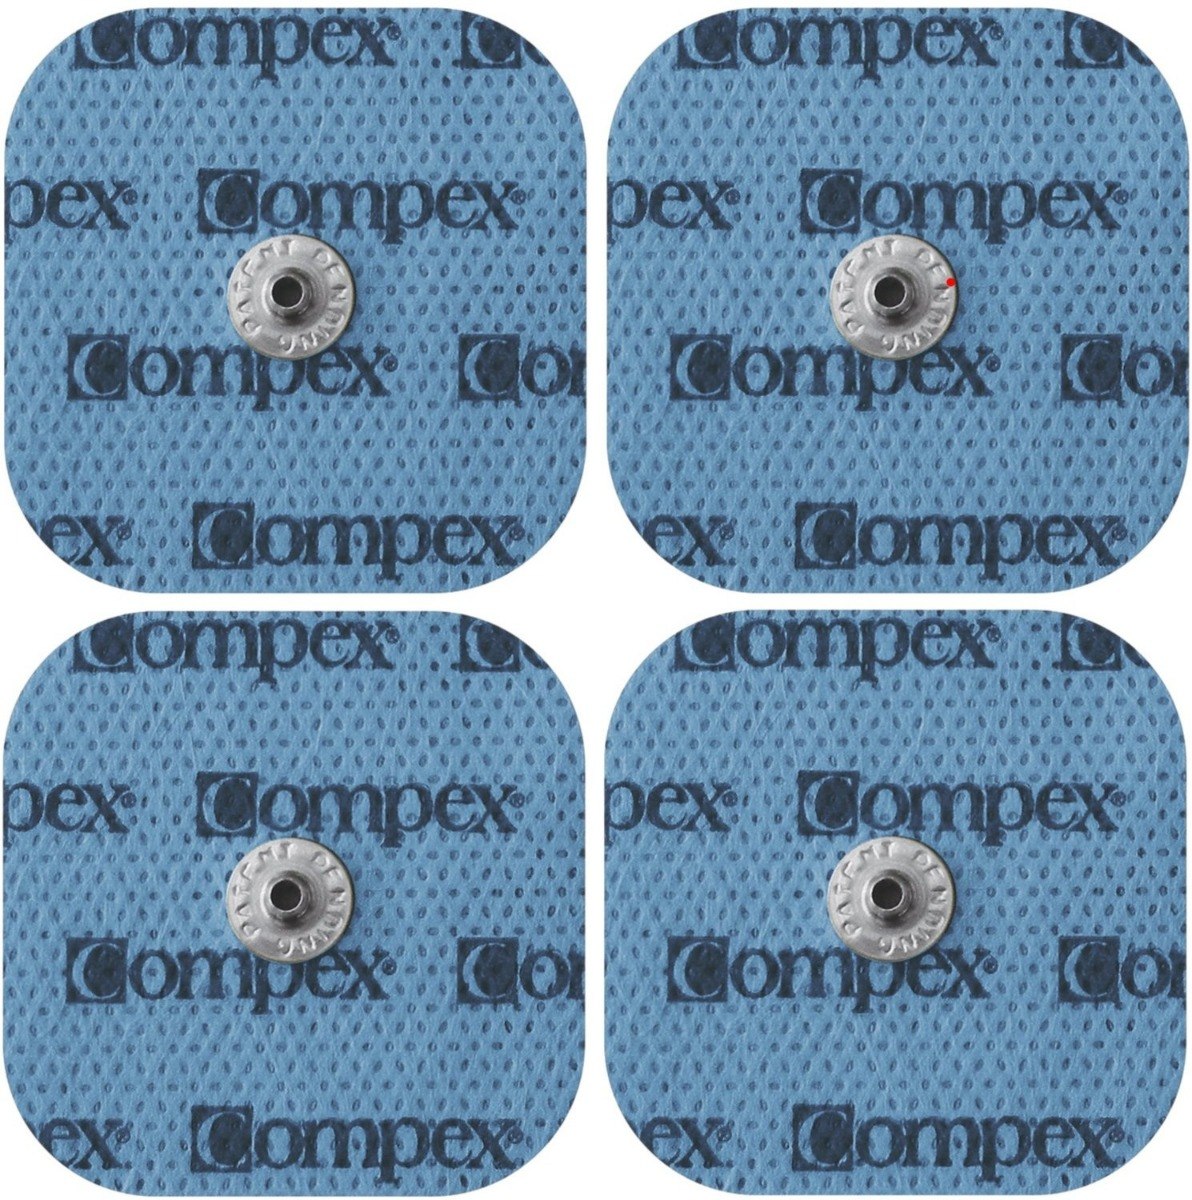 8 Electrodos 5x5 Parches Single Snap Compatibles Con Compex